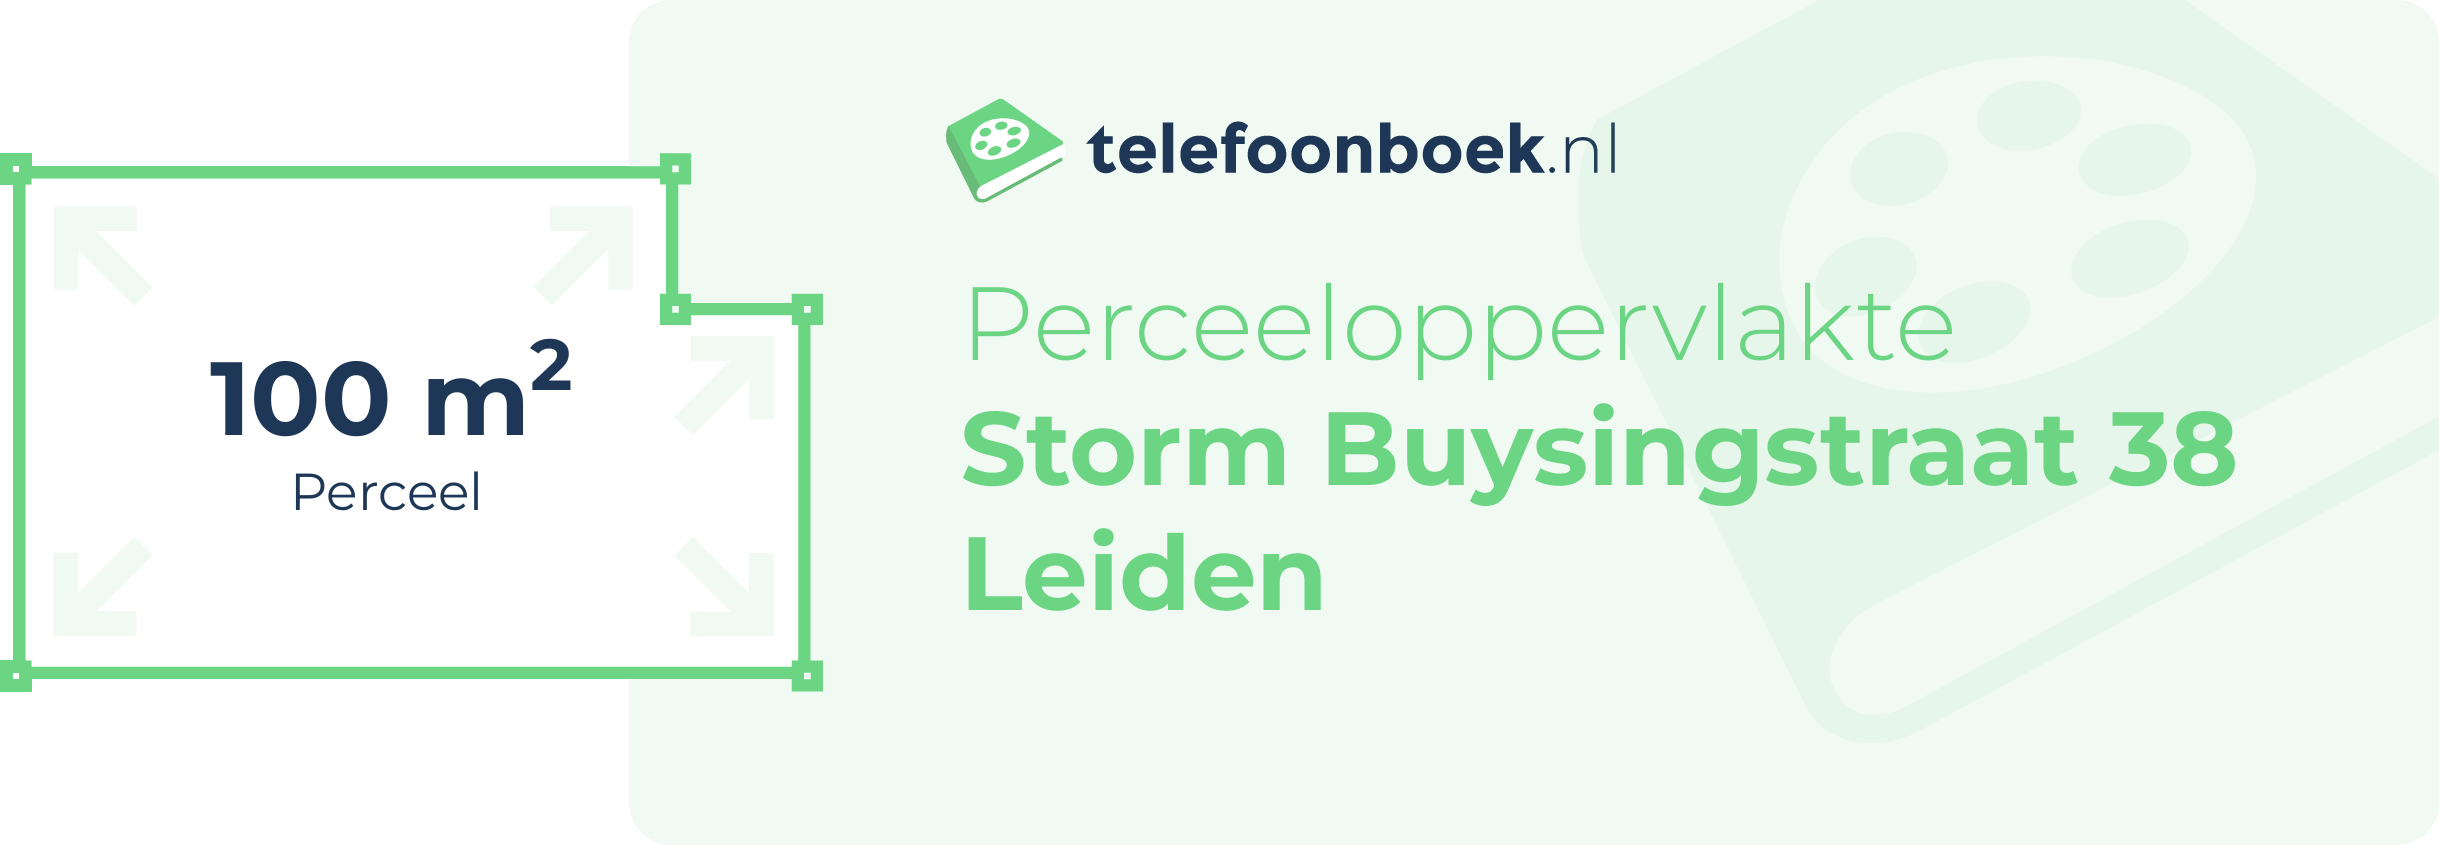 Perceeloppervlakte Storm Buysingstraat 38 Leiden